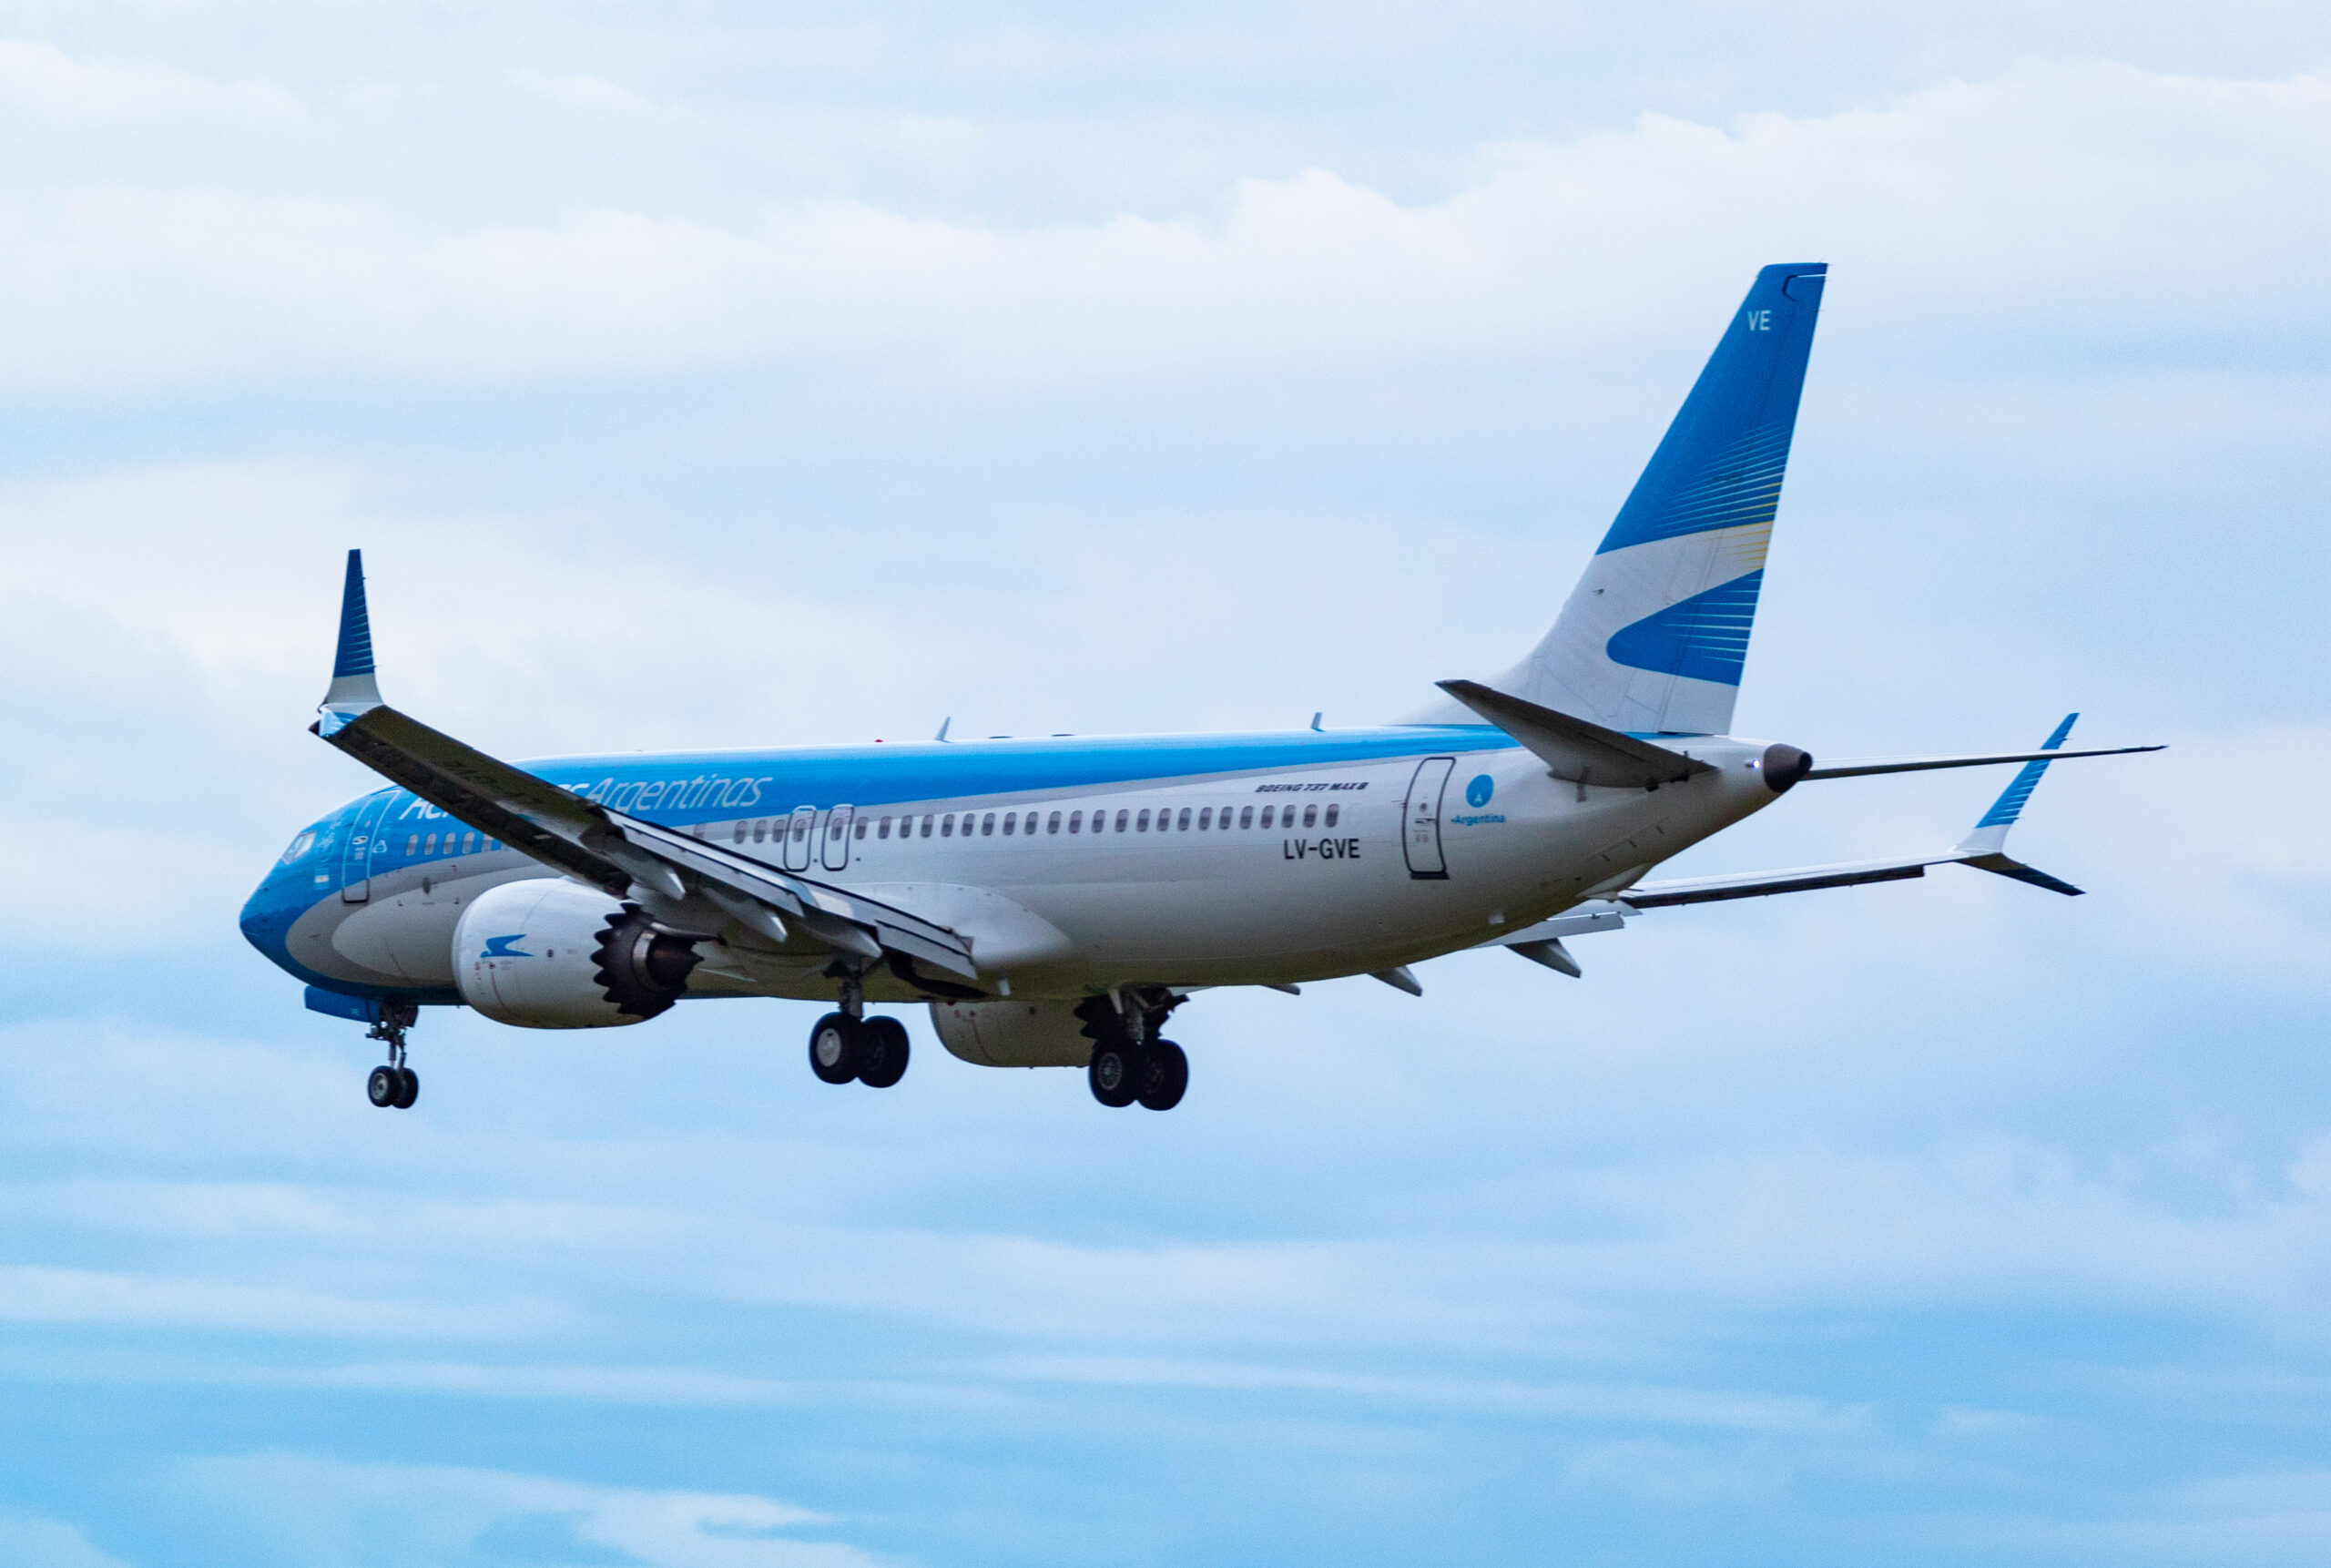 LV-GVE - Boeing 737 MAX 8 - Aerolineas Argentinas - Blog do Spotter